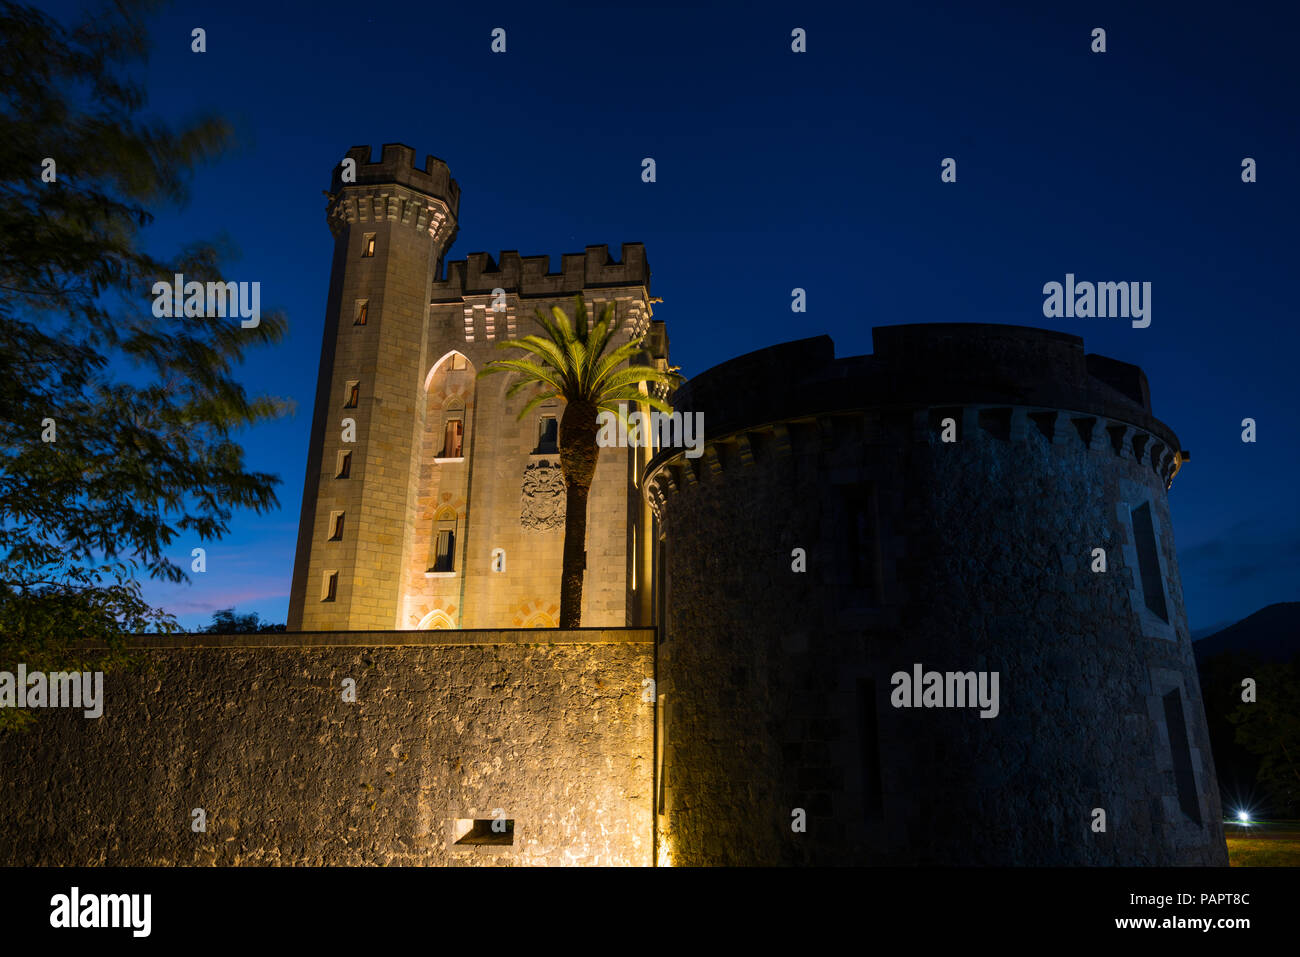 Le Castillo de la Emperatriz Eugenia de Montijo, château dans le village d'Arteaga, Biosphère d'Urdaibai, Biscaye, Pays Basque, Espagne, Europe Banque D'Images